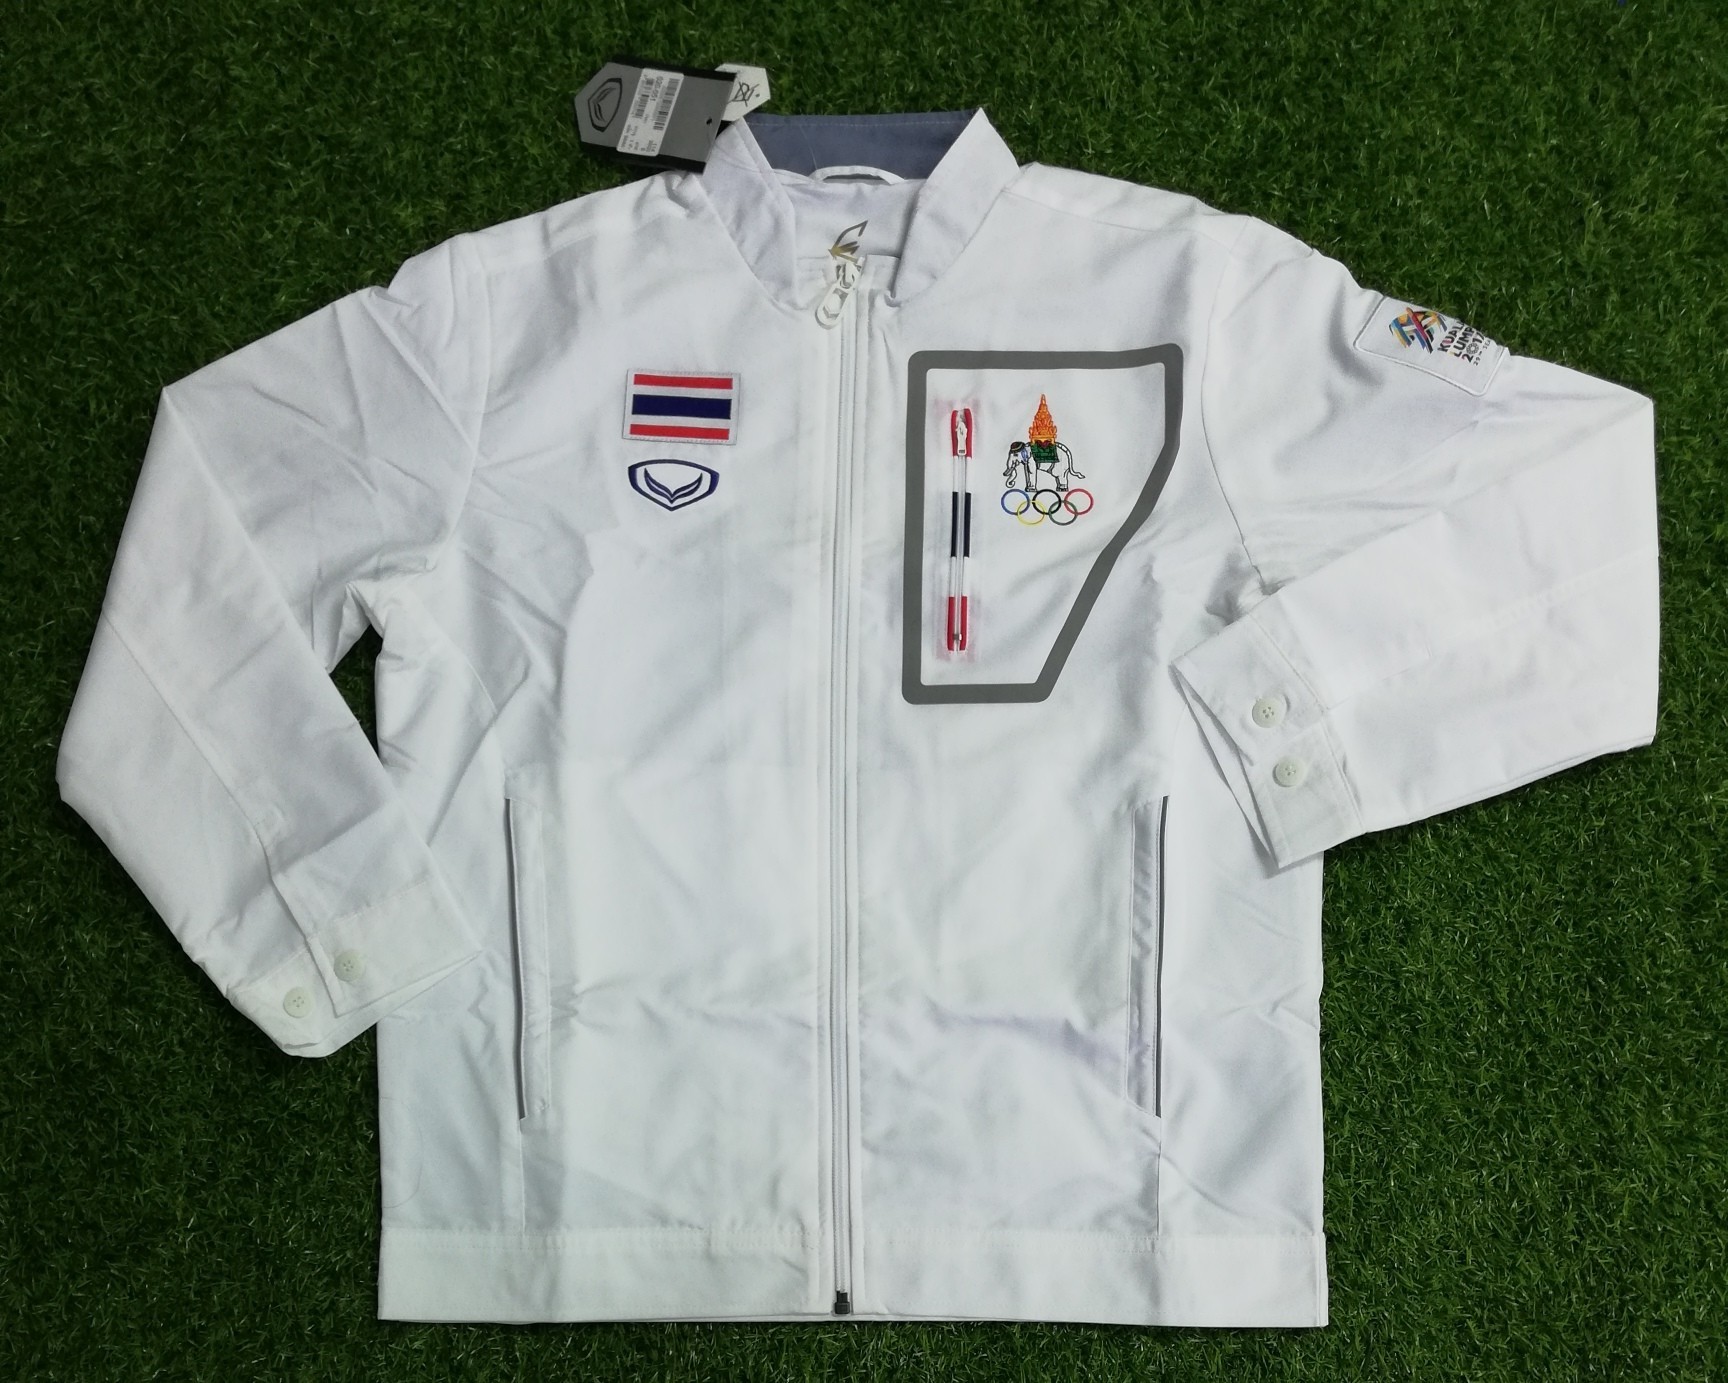 ของแท้ Grand Sport Track Jacket Thailand Nation เสื้อแทร็คสูท นักกีฬา ทีมชาติไทย ซีเกมส์ มาเลเซีย 2017 สีขาว ของแท้ ใหม่ ป้ายห้อย